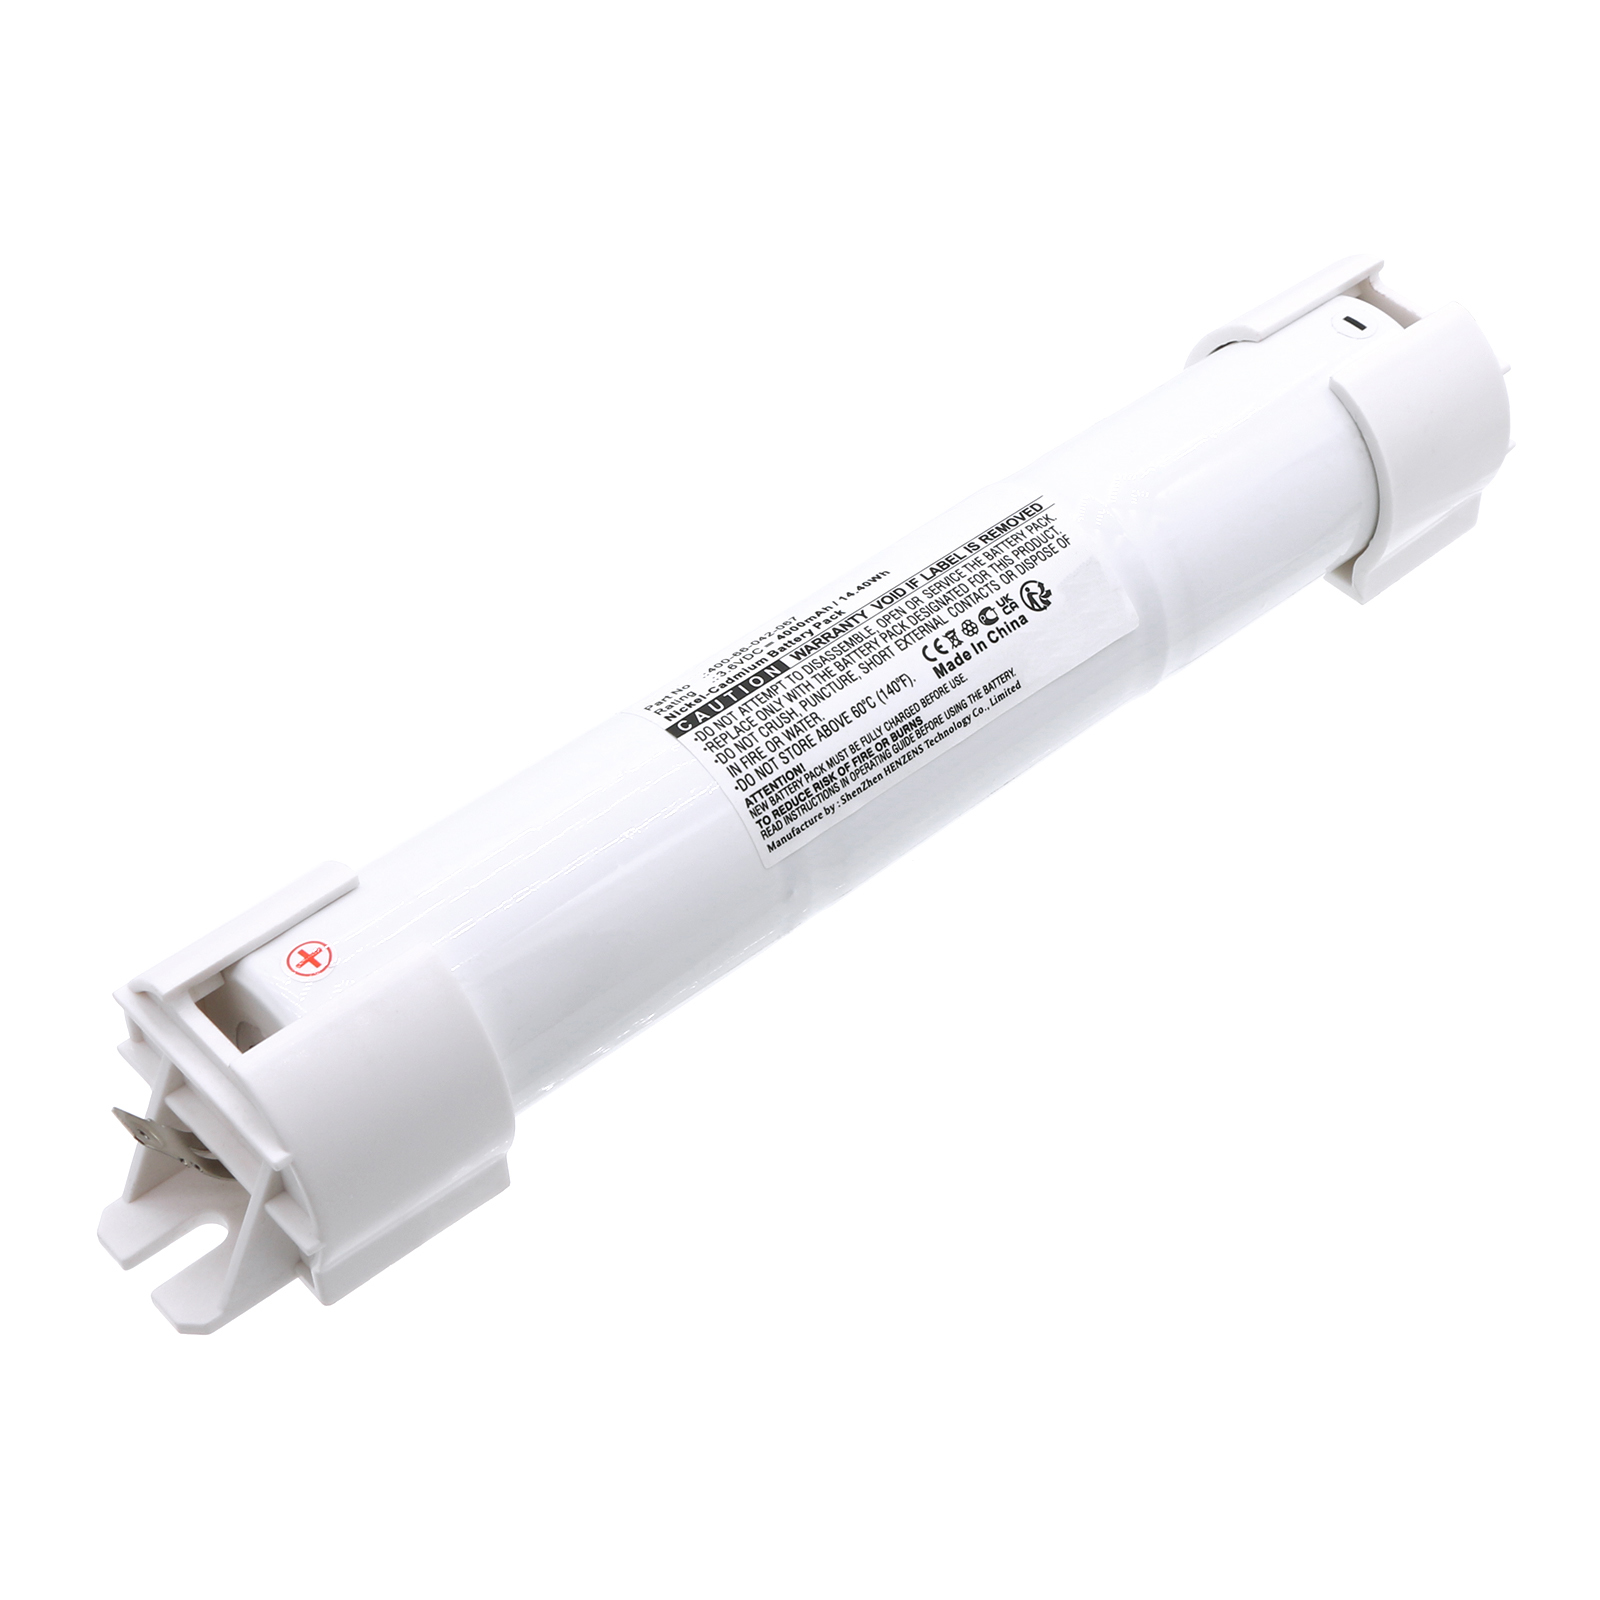 Synergy Digital Emergency Lighting Battery, Compatible with Ceag 400-66-042-067 Emergency Lighting Battery (Ni-CD, 3.6V, 4000mAh)